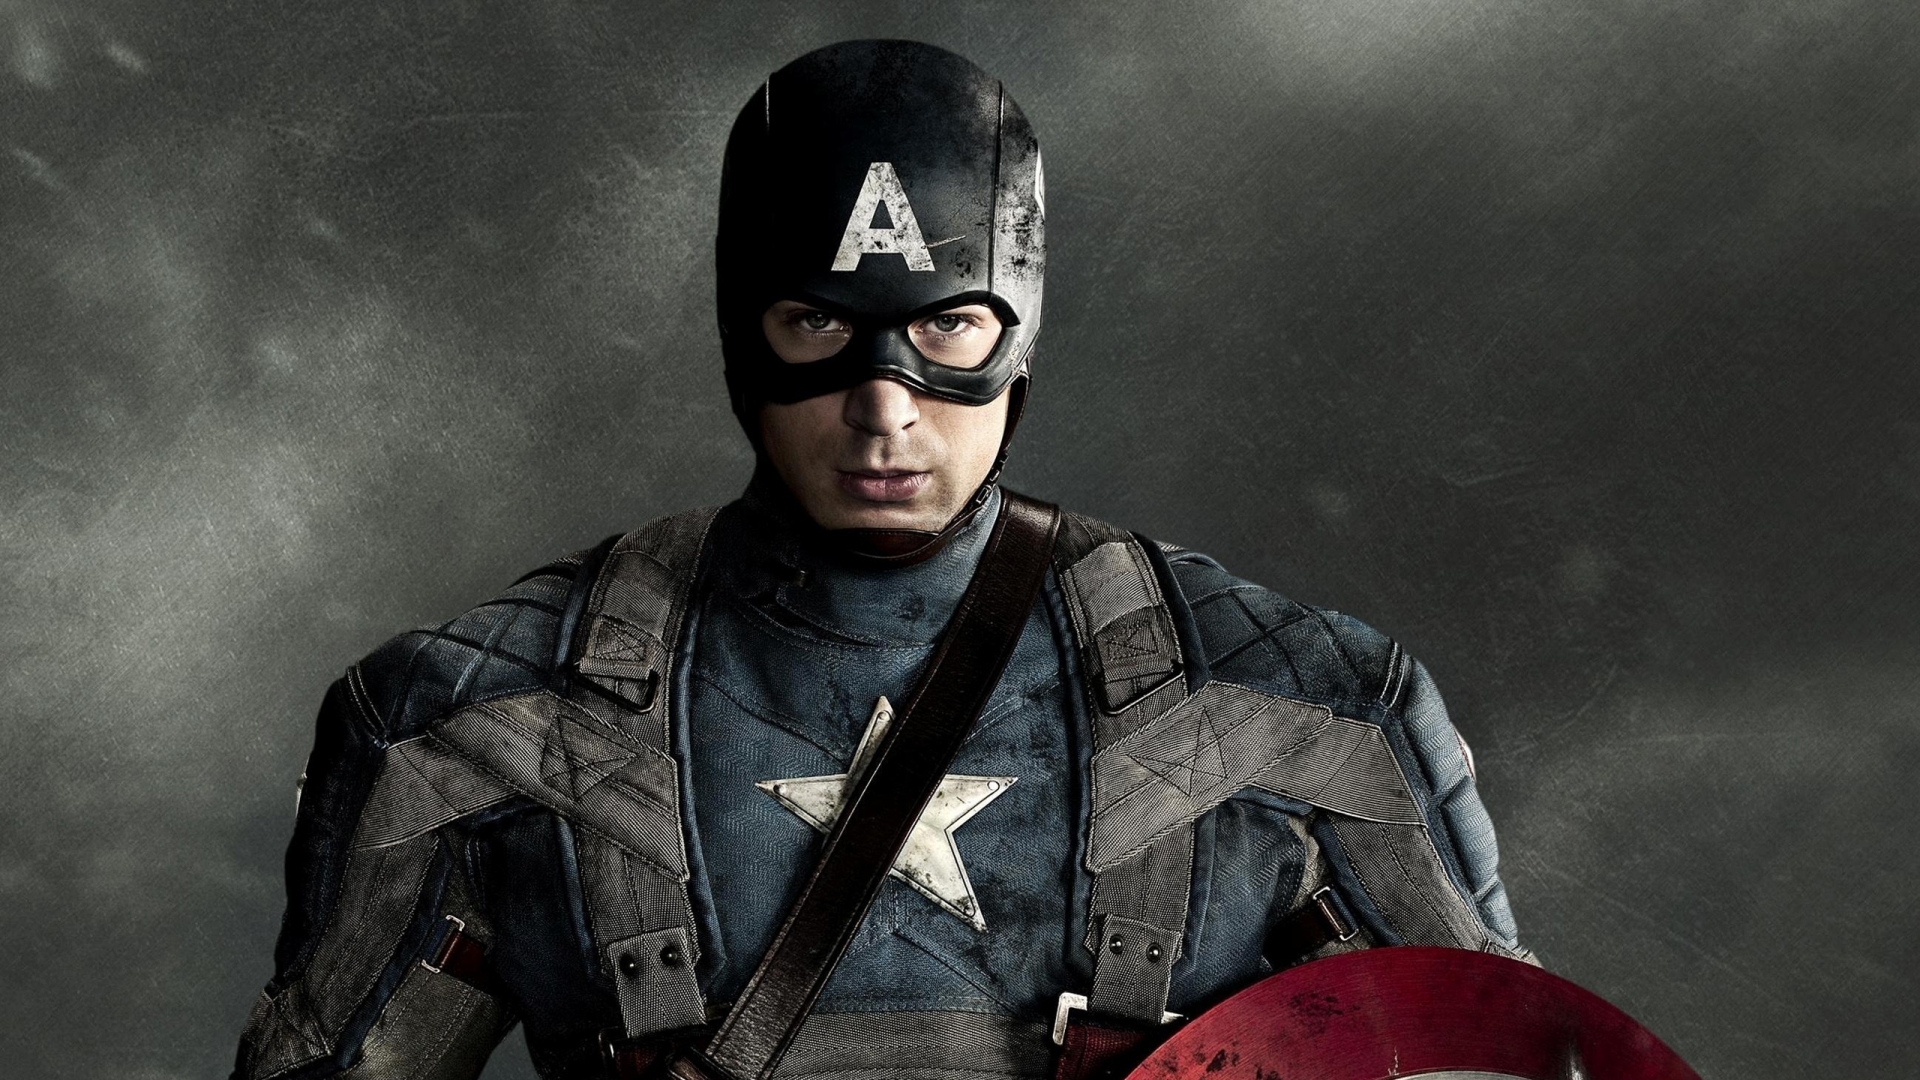 Captain America for 1920 x 1080 HDTV 1080p resolution